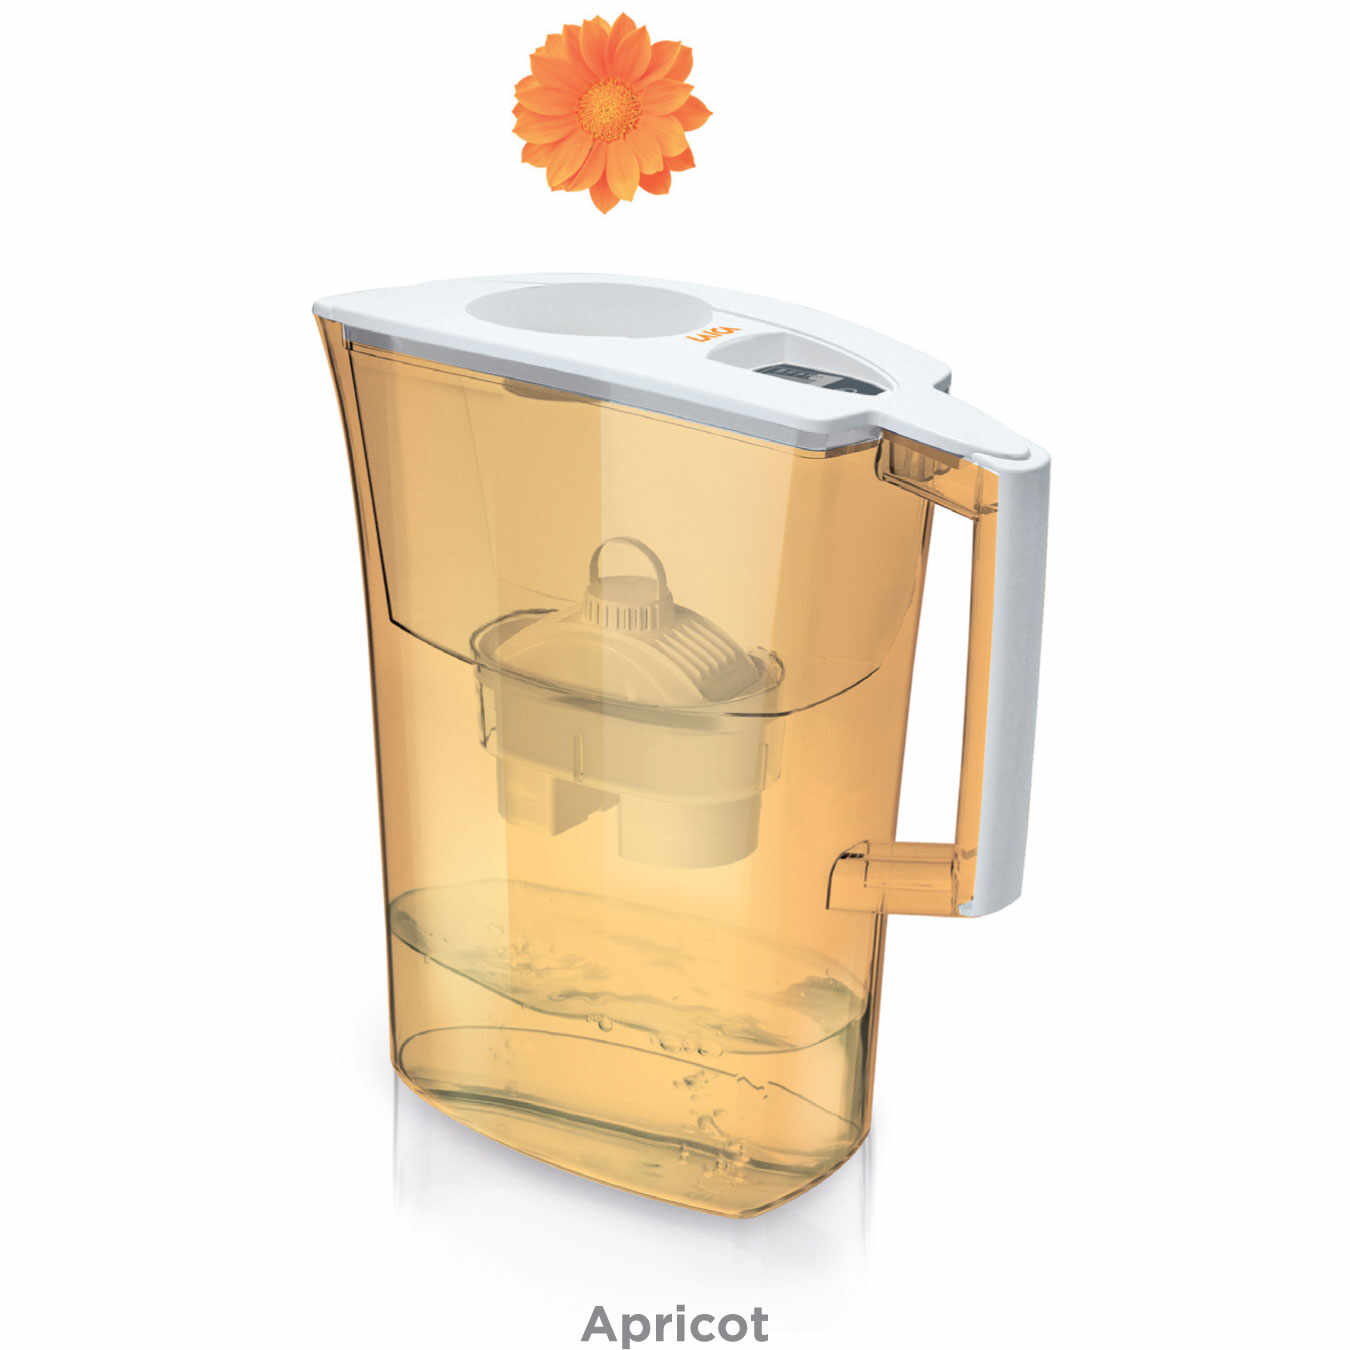 Cana filtranta de apa Laica Spring Apricot, 3 litri